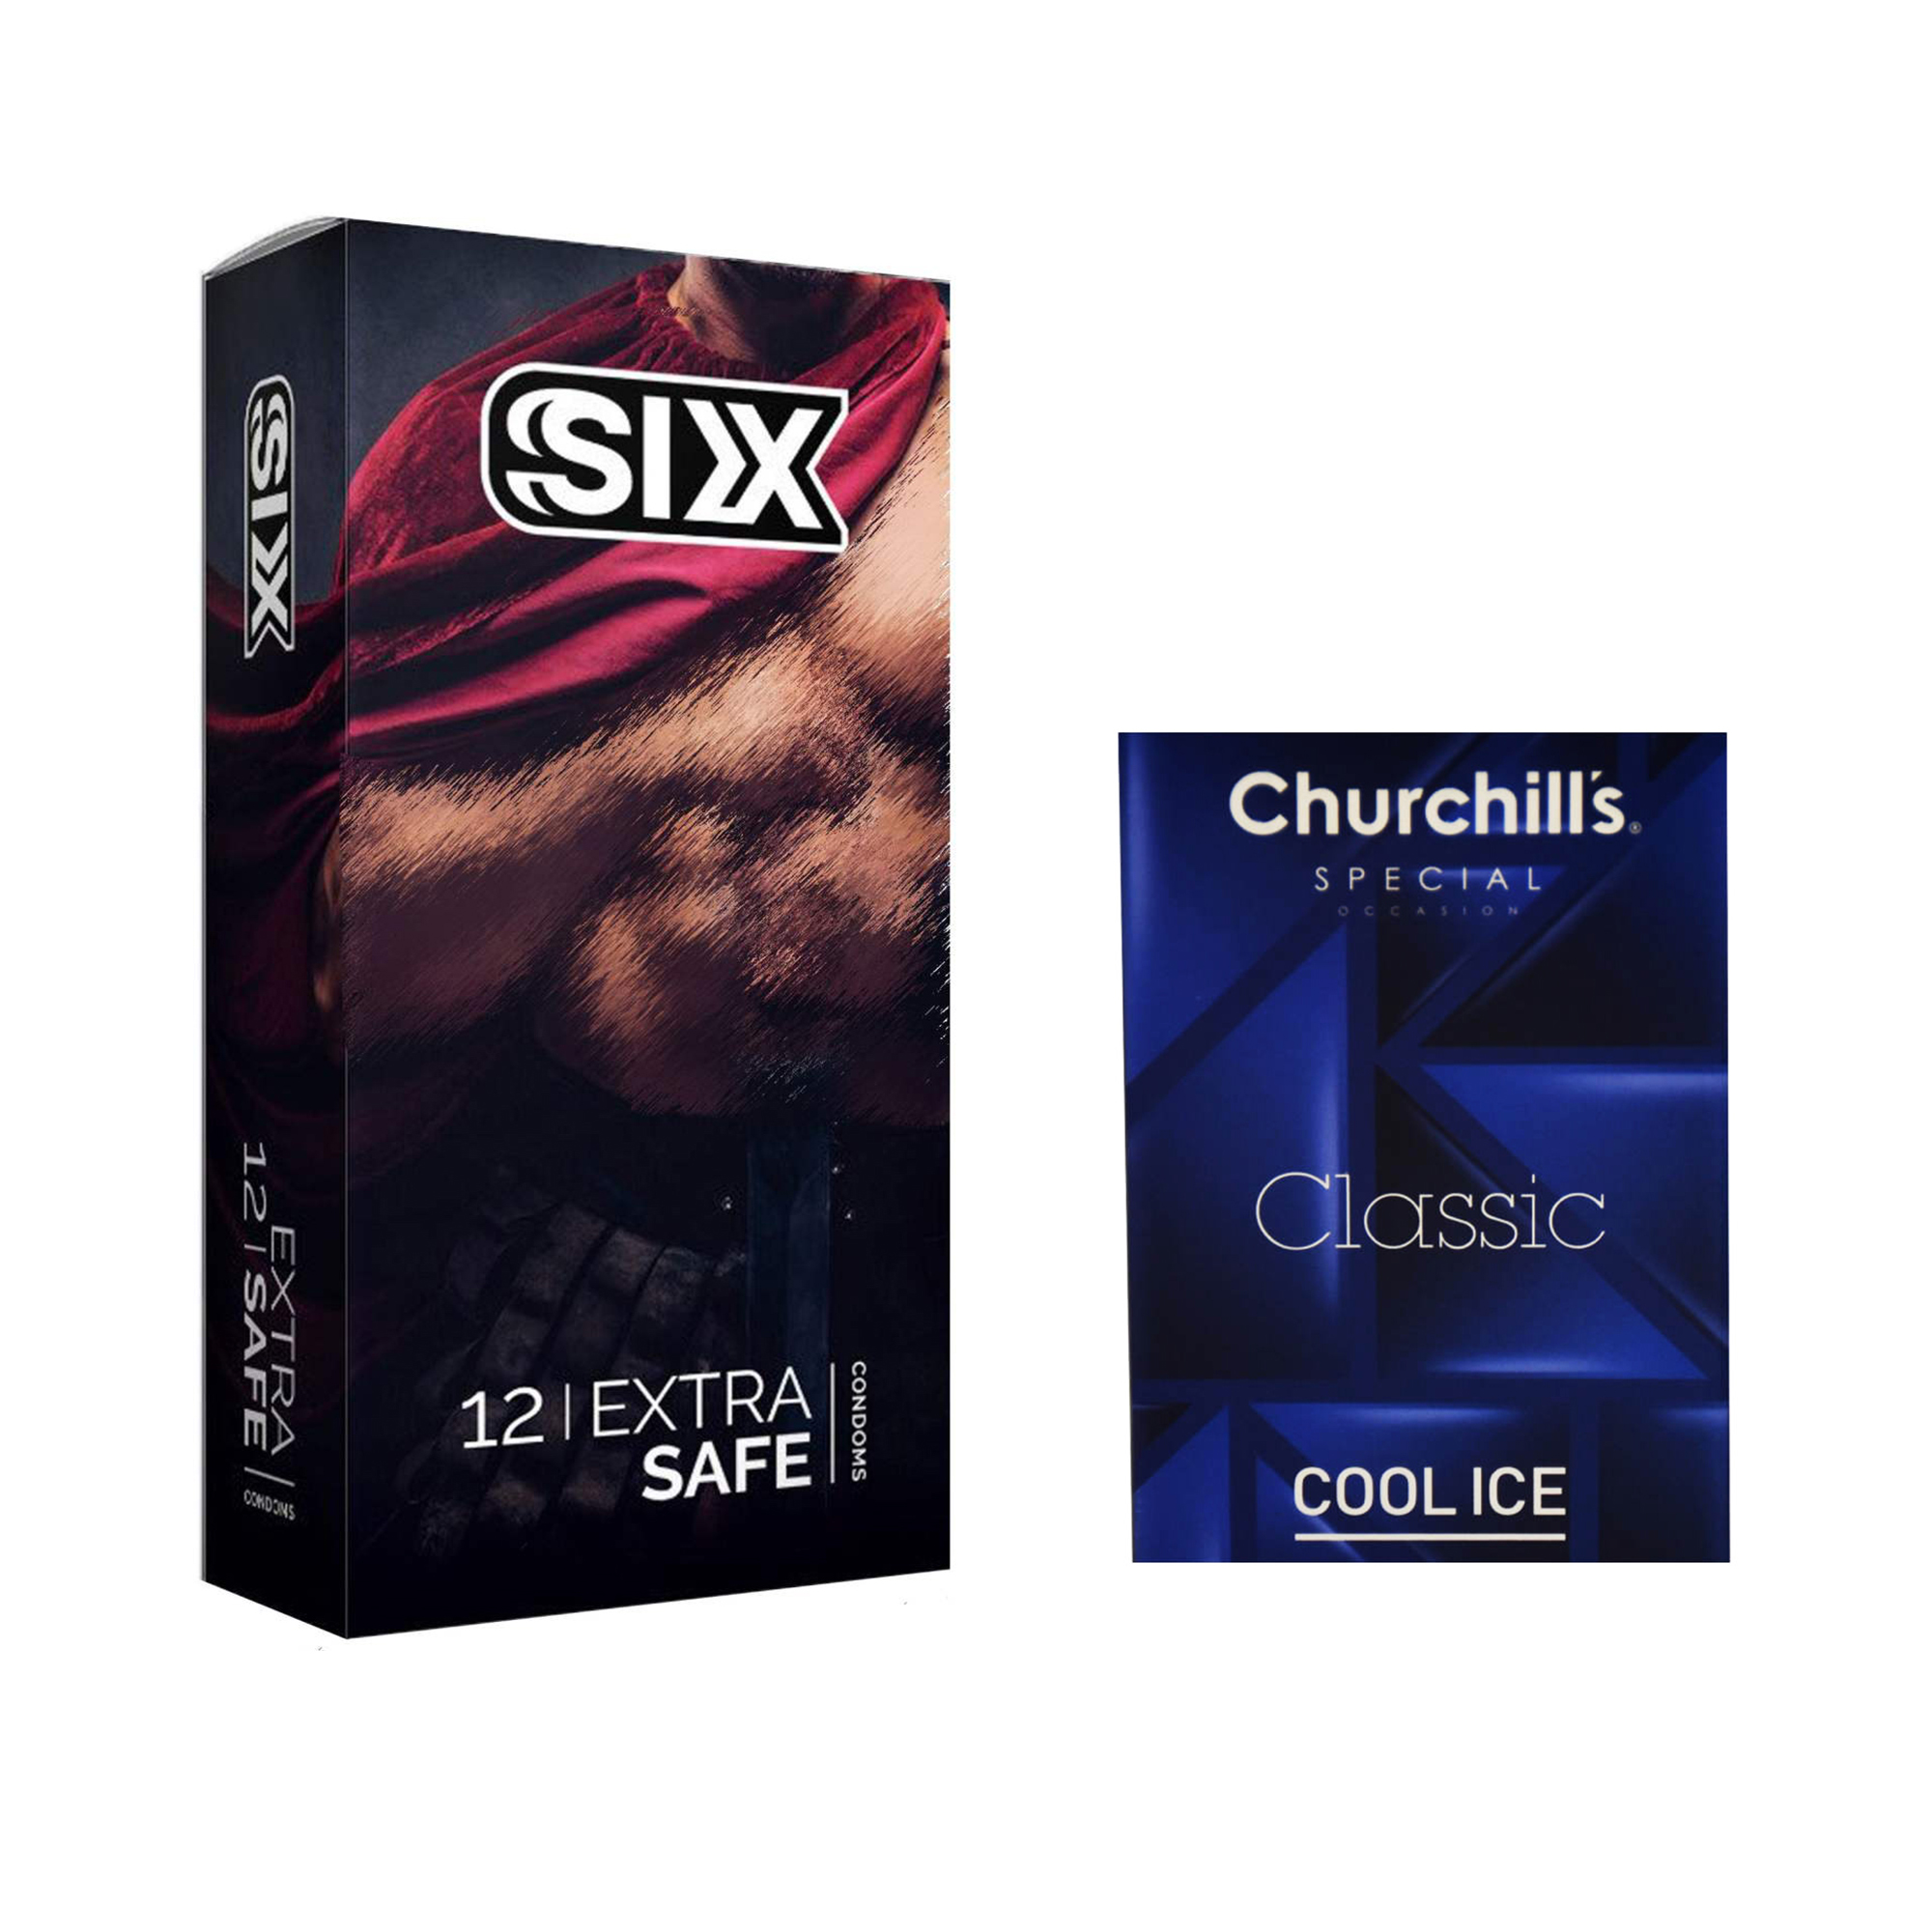 کاندوم سیکس مدل Max Safety بسته 12 عددی به همراه کاندوم چرچیلز مدل Cool Ice بسته 3 عددی